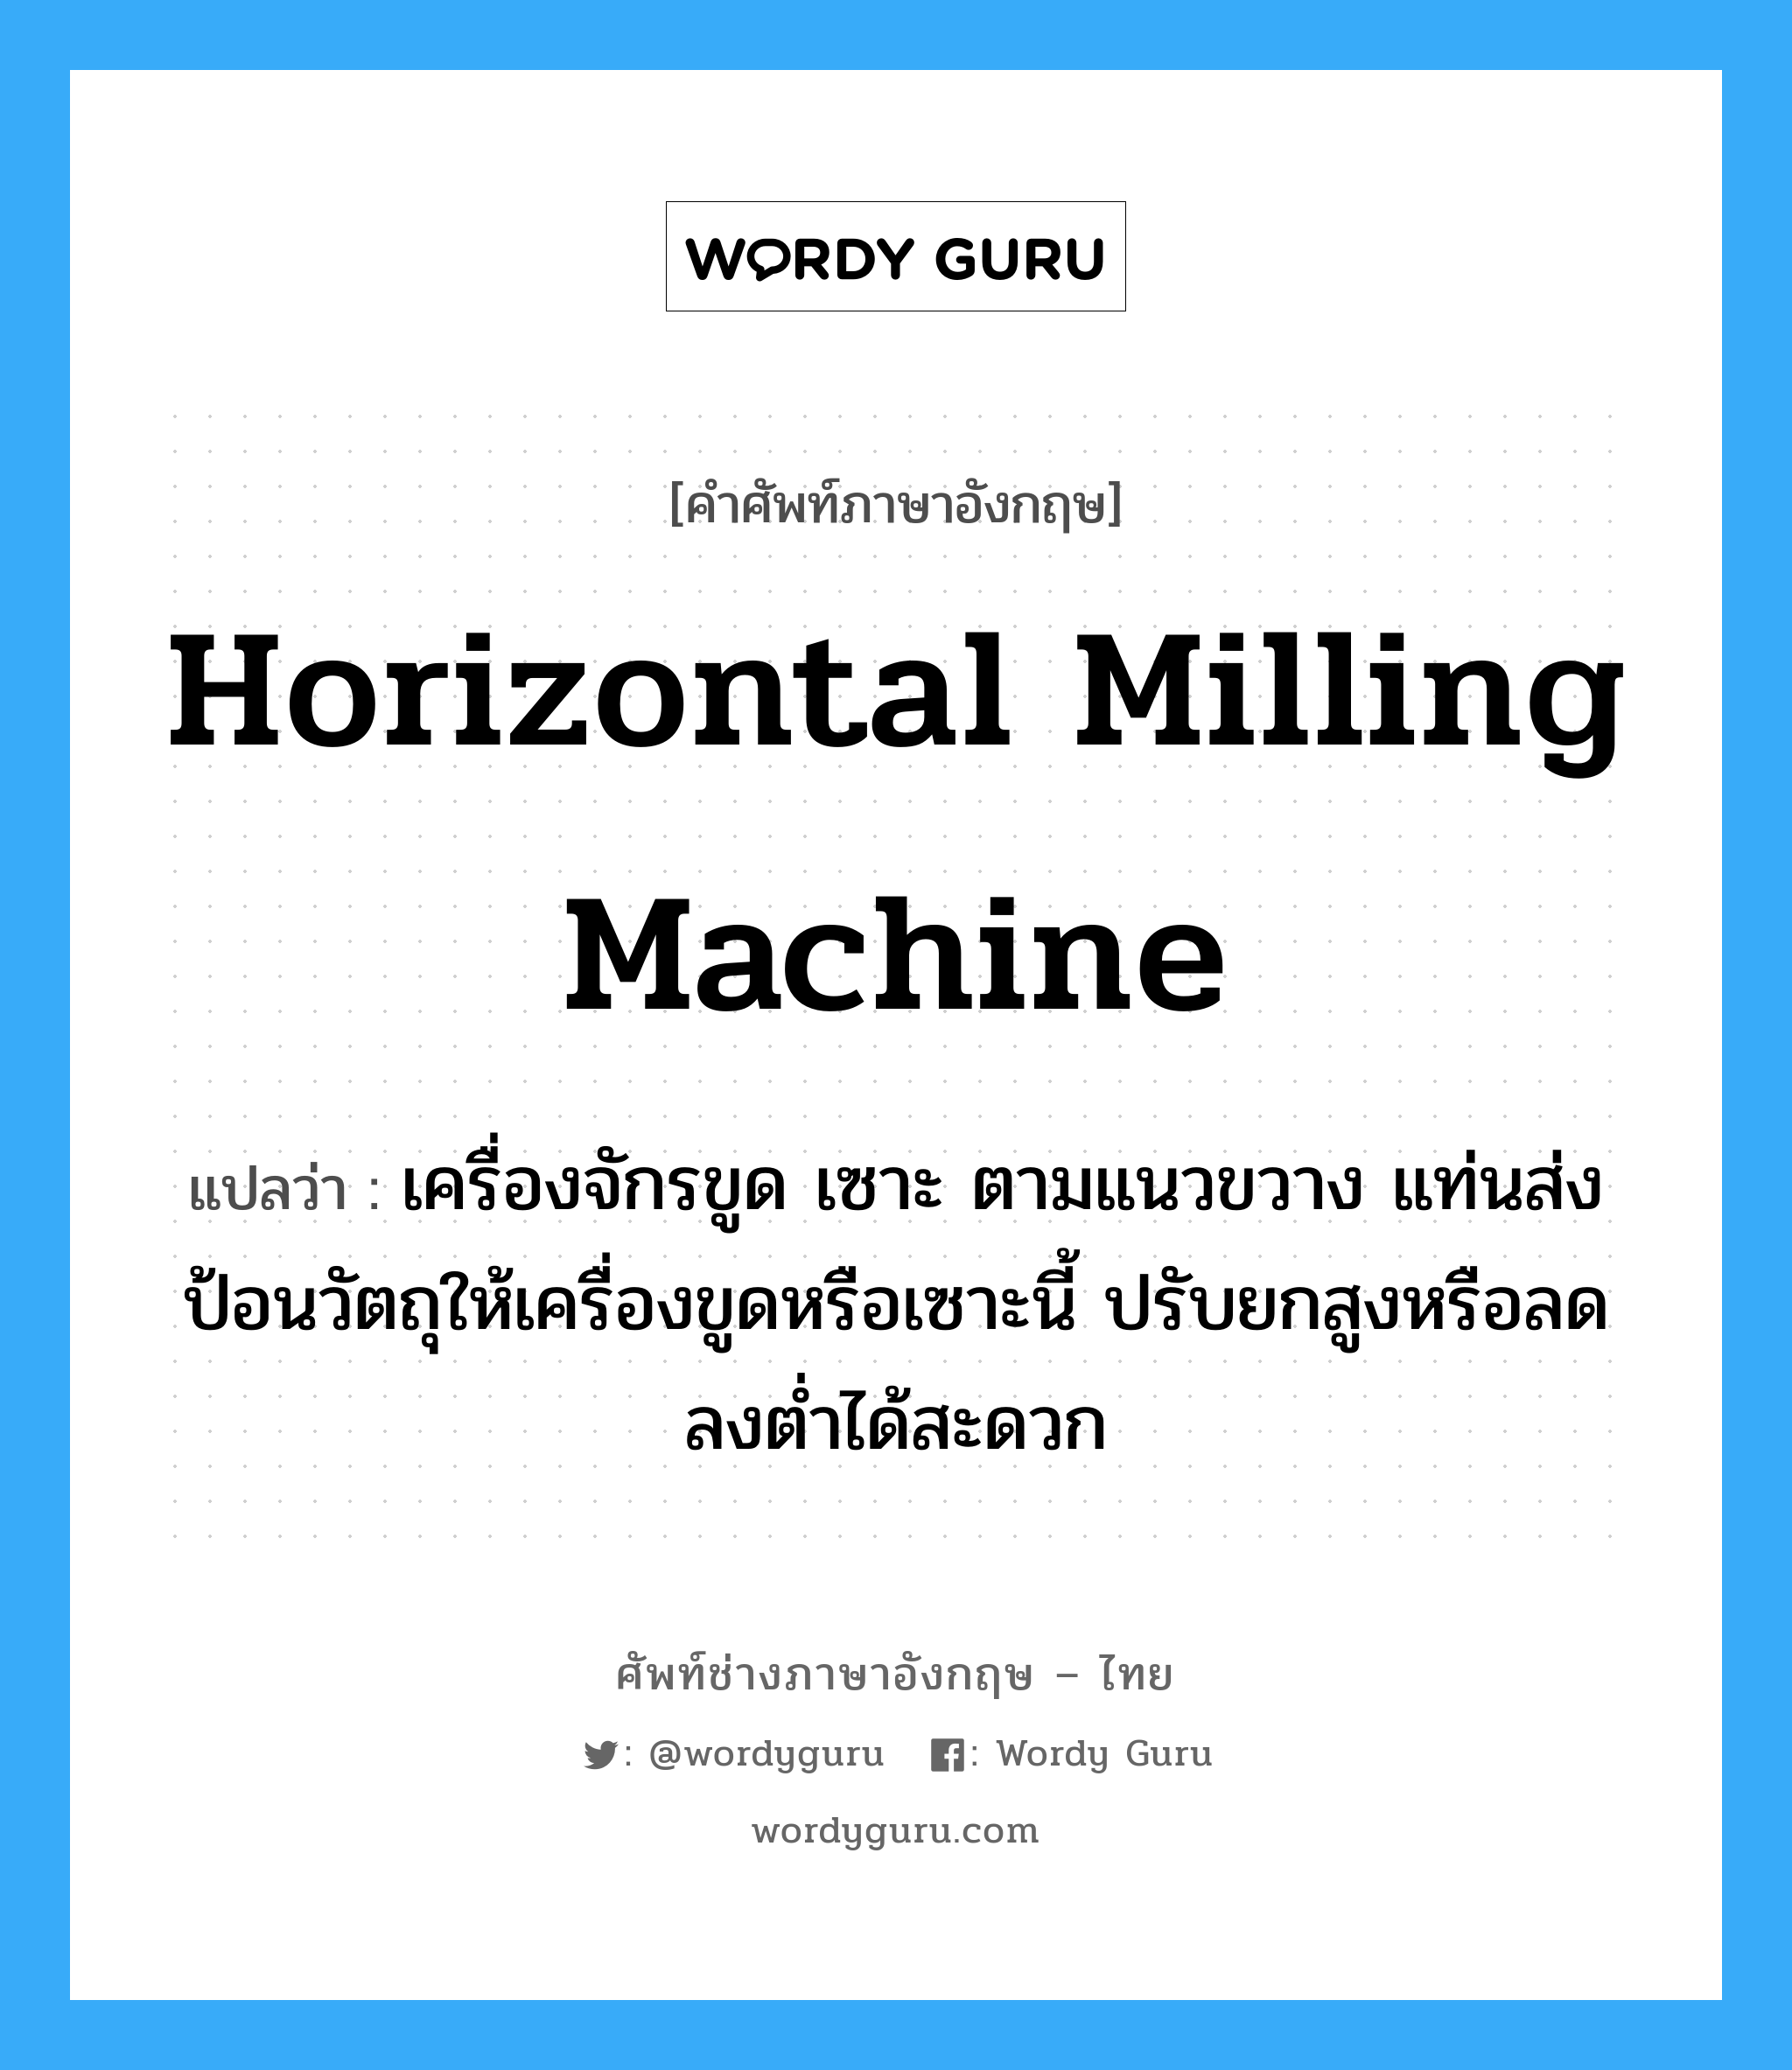 horizontal milling machine แปลว่า?, คำศัพท์ช่างภาษาอังกฤษ - ไทย horizontal milling machine คำศัพท์ภาษาอังกฤษ horizontal milling machine แปลว่า เครื่องจักรขูด เซาะ ตามแนวขวาง แท่นส่งป้อนวัตถุให้เครื่องขูดหรือเซาะนี้ ปรับยกสูงหรือลดลงต่ำได้สะดวก